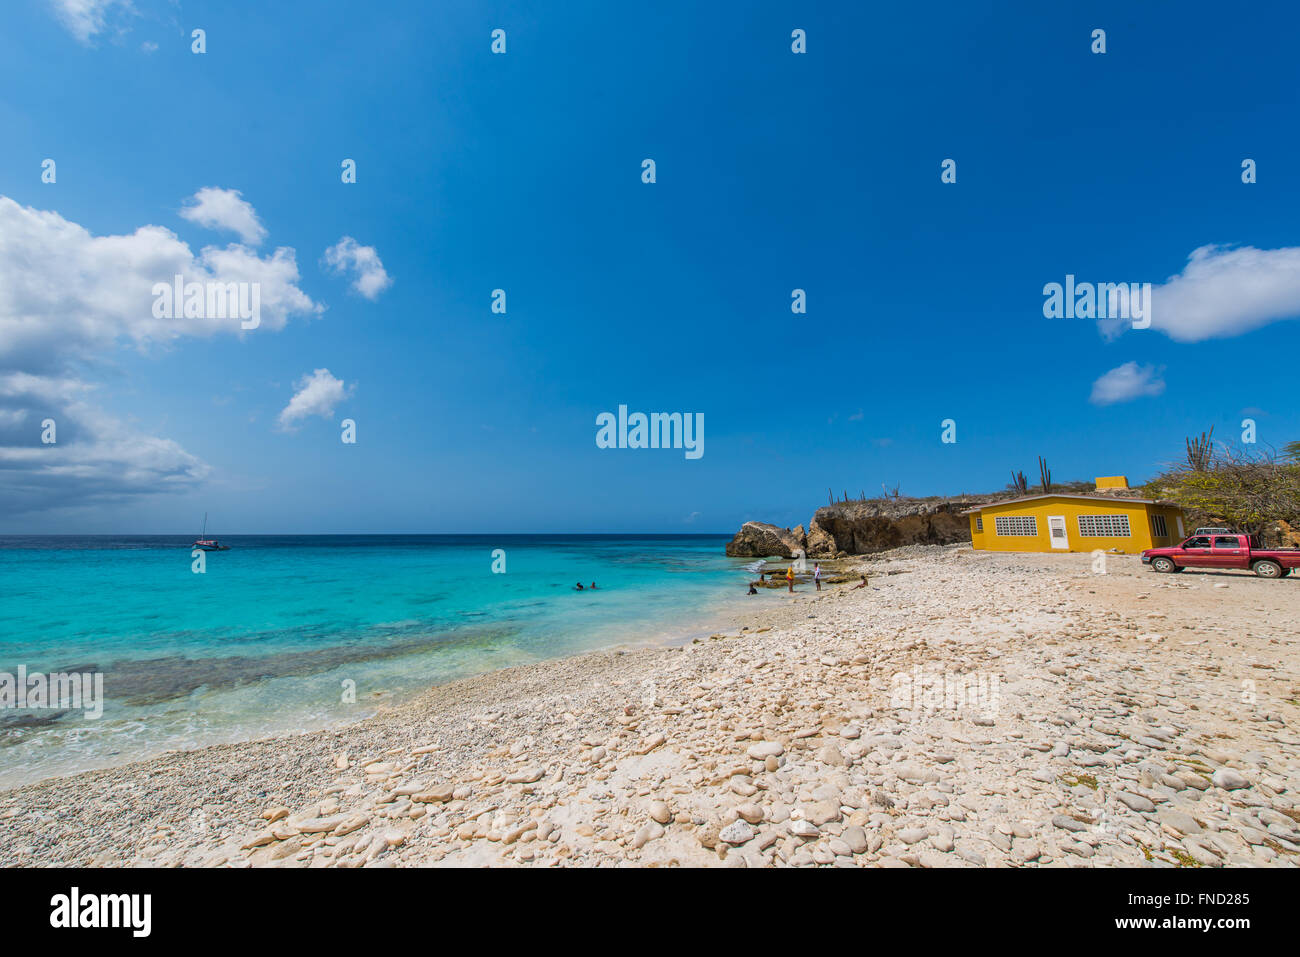 Joli Bonaire avec ses beaux paysages, plages et récifs incroyables. Un paradis pour les sports nautiques et les amoureux de la nature Banque D'Images